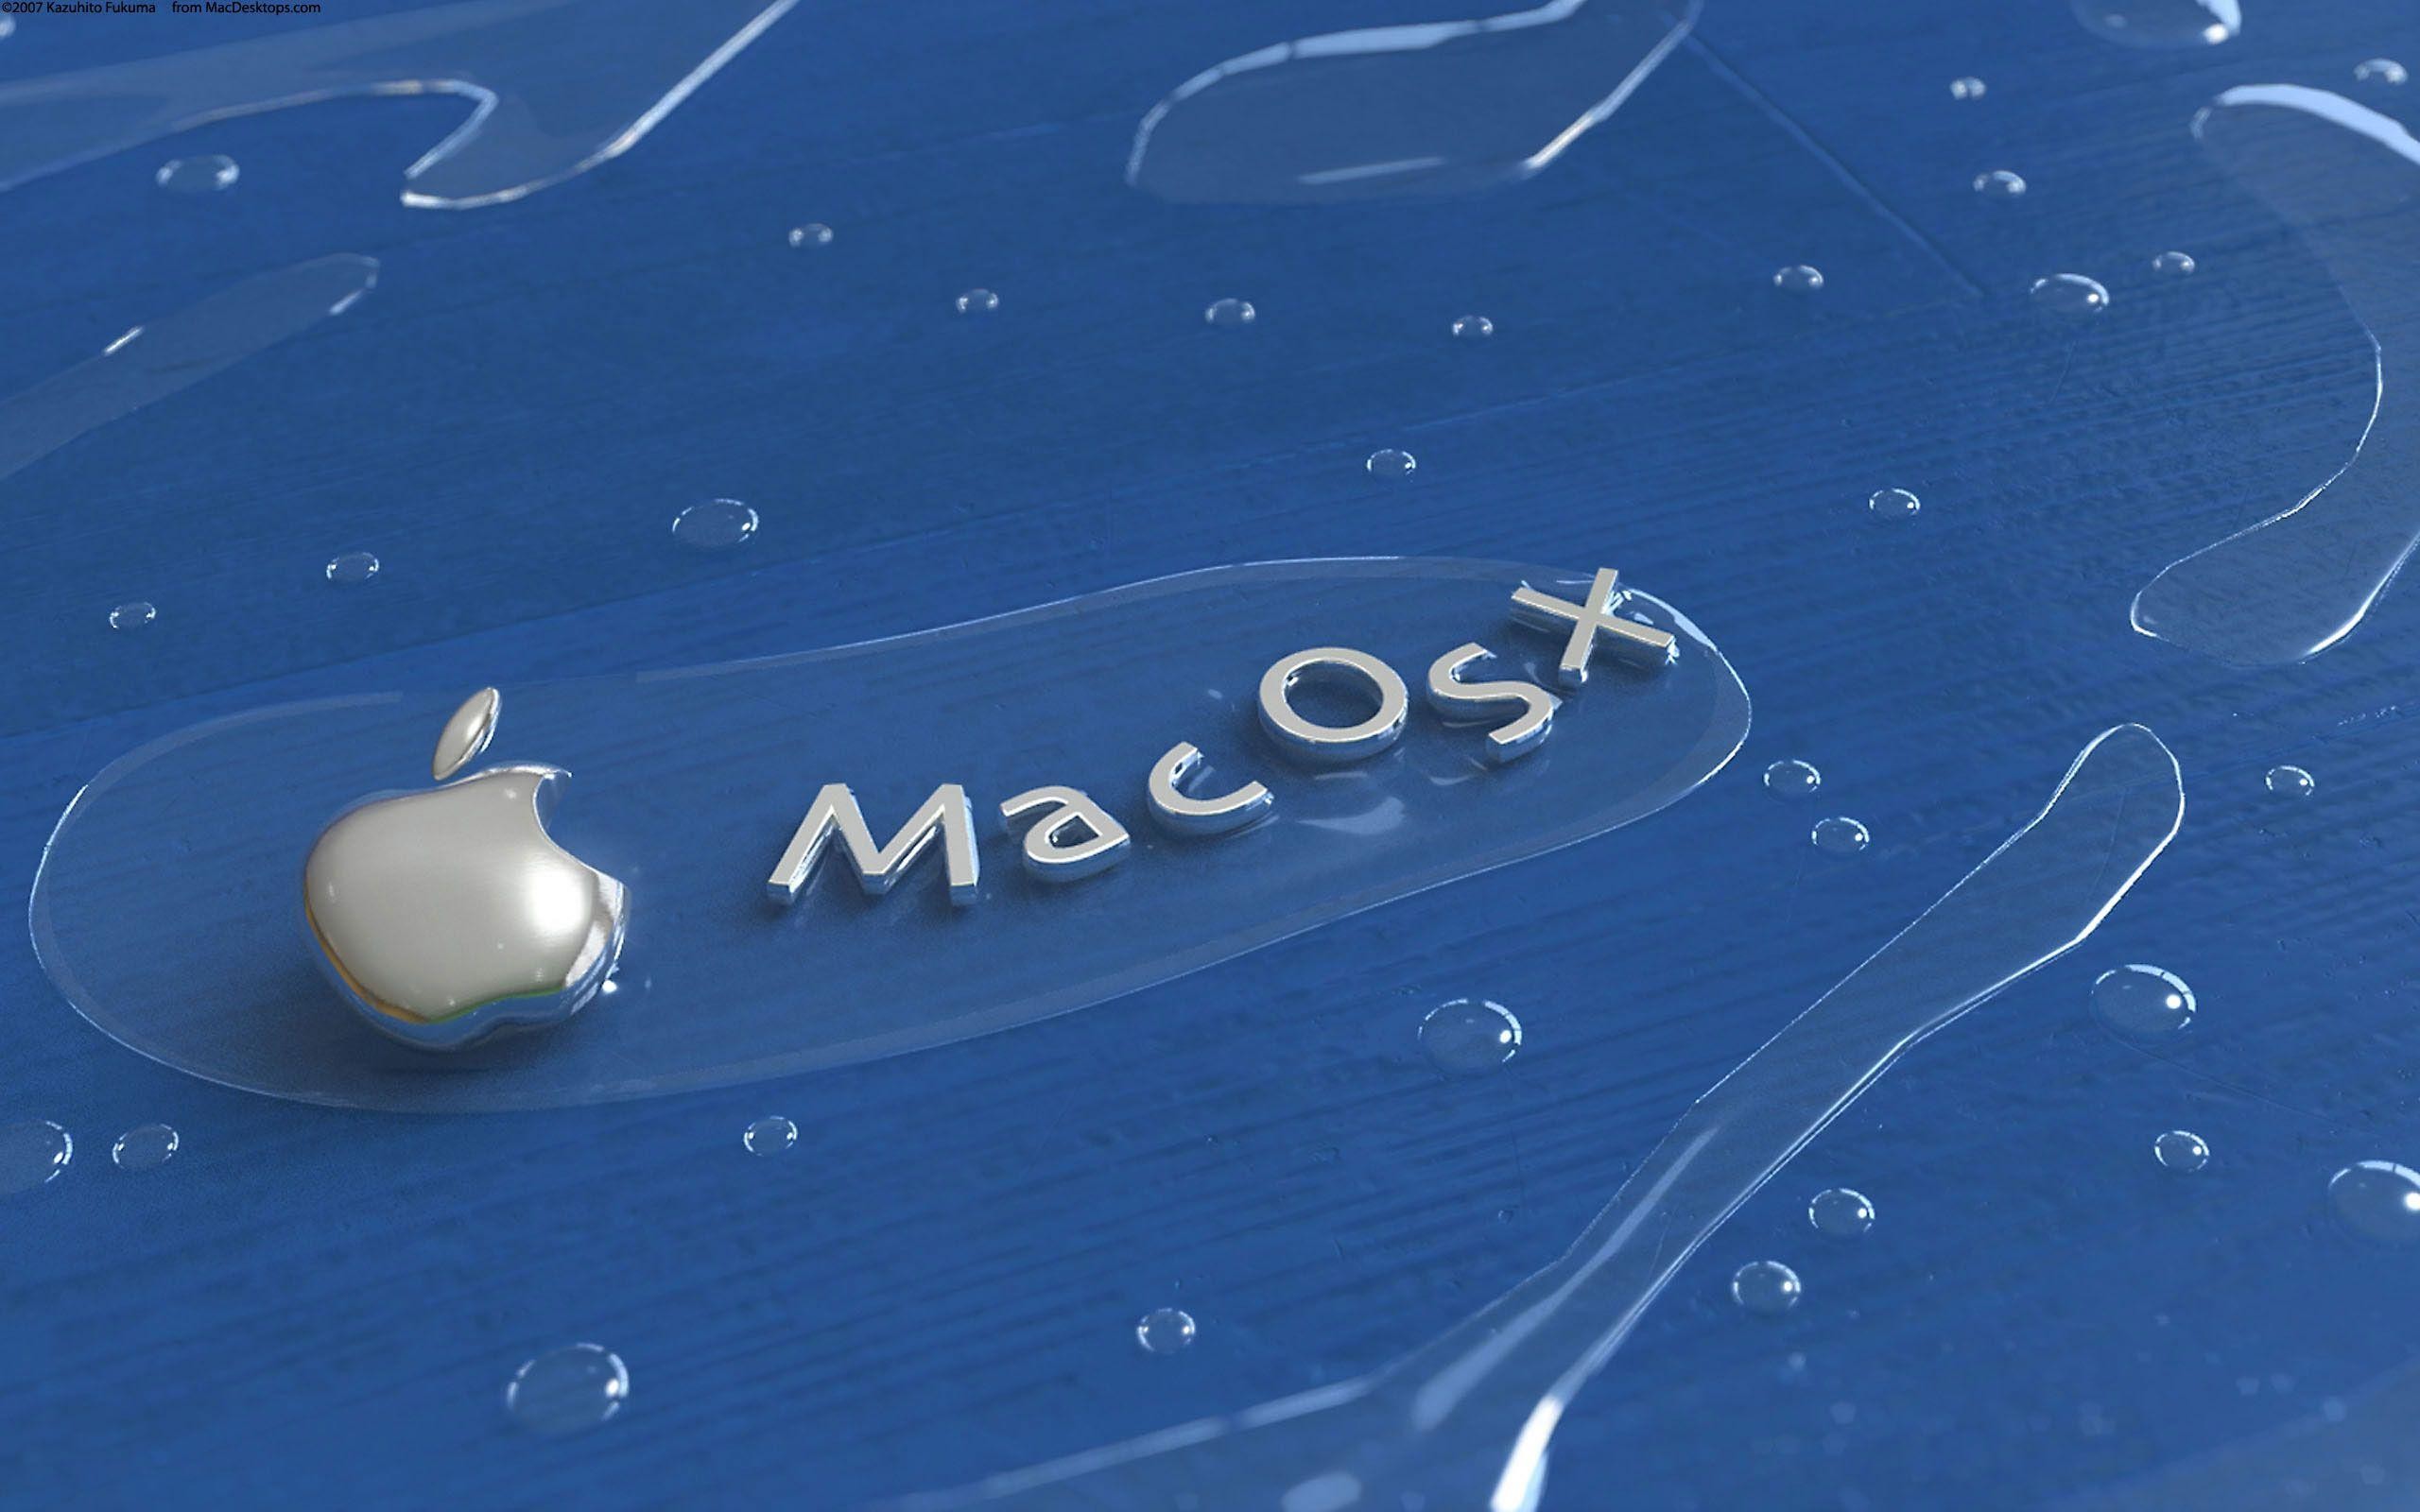 2560x1600 Wallpaper mac os x hd 2014 - Mac - Wallpapers for mac 2014 .